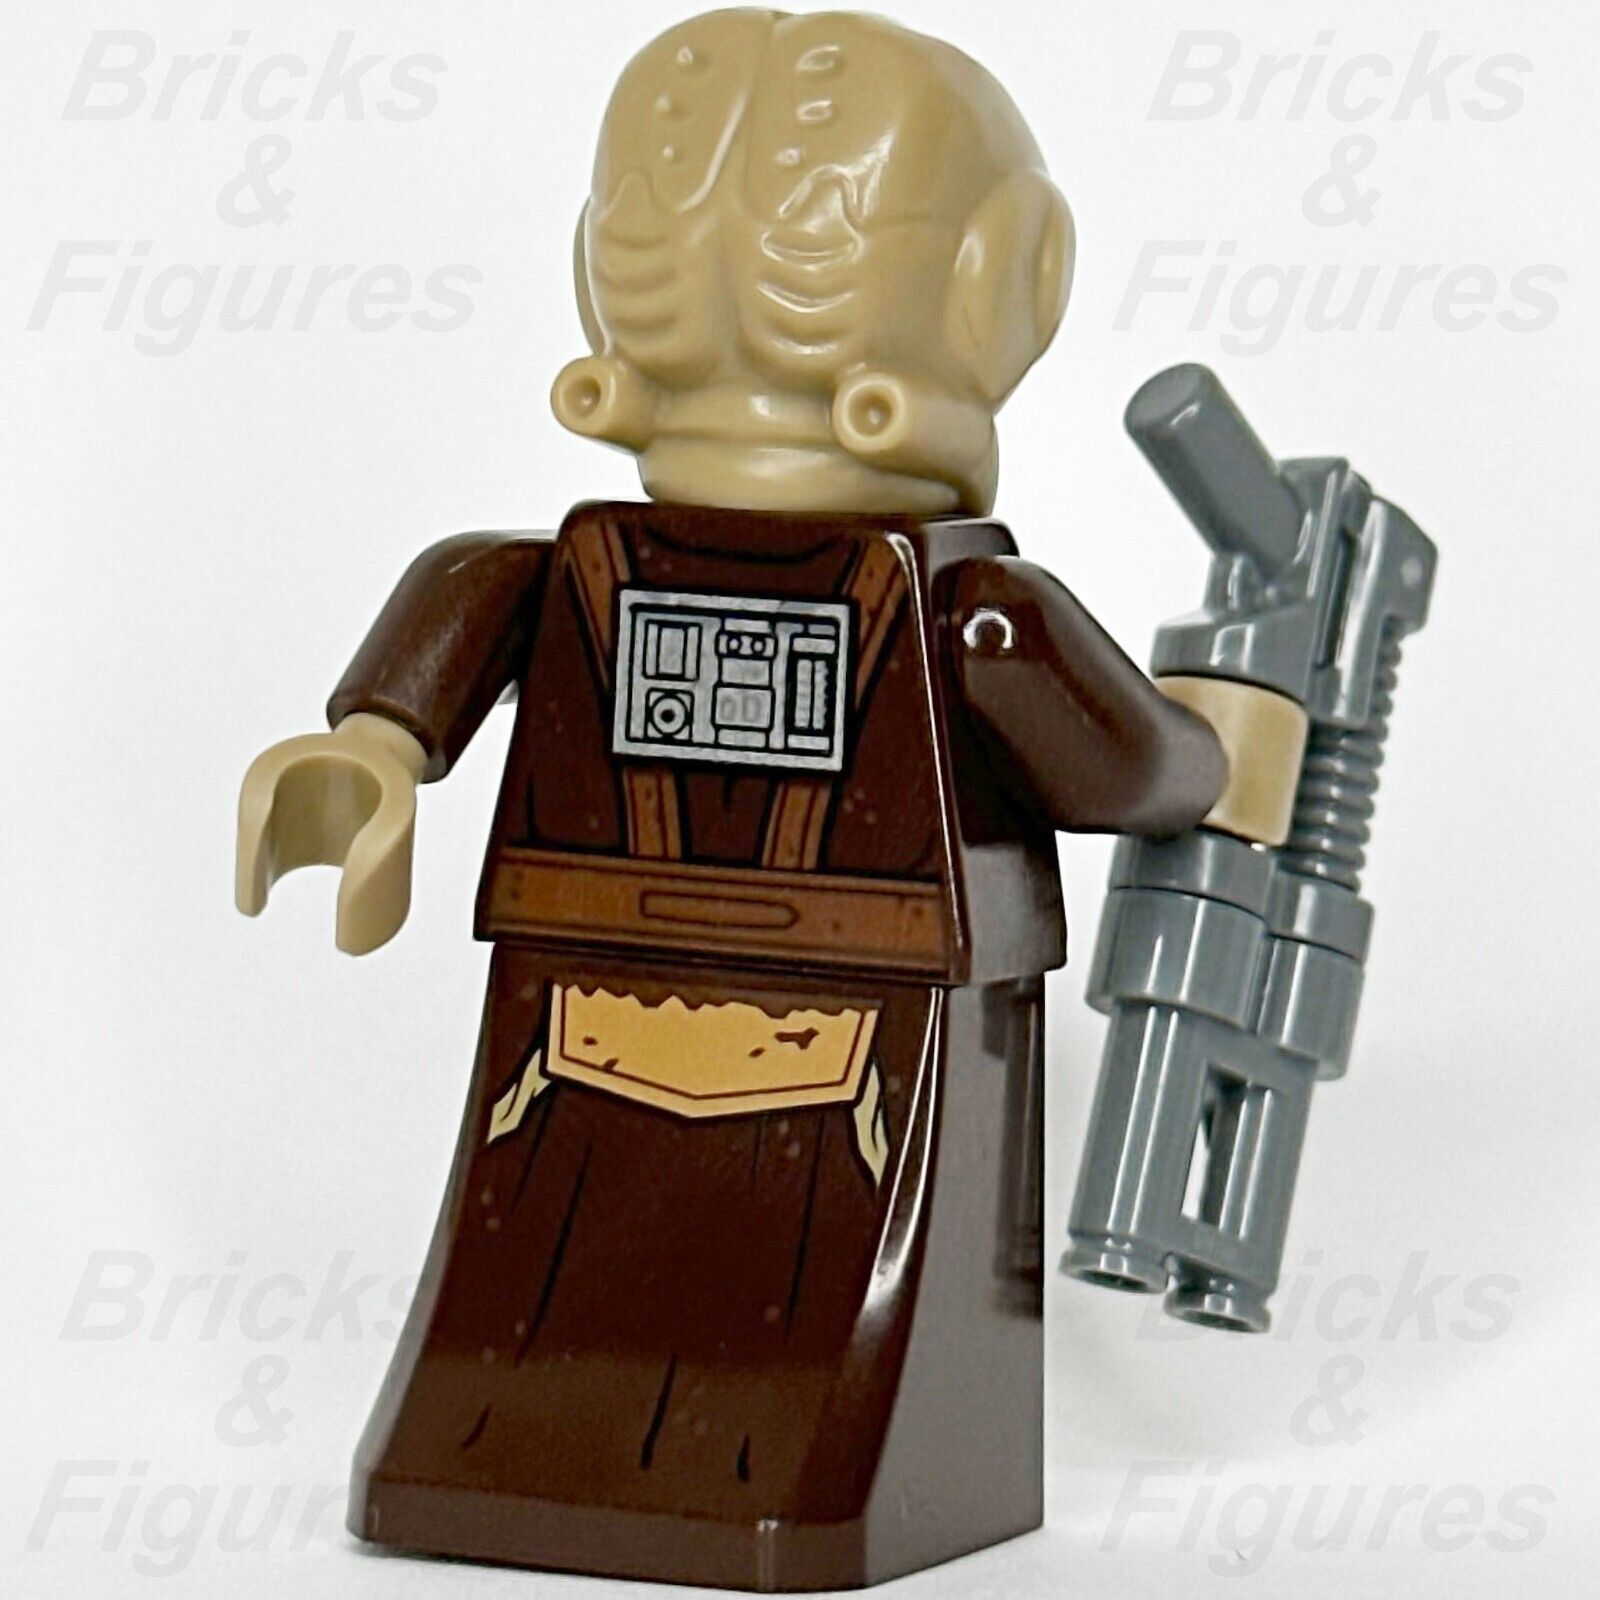 LEGO Star Wars Zuckuss Minifigure Bounty Hunter Force-Sensitive 75243 sw1020